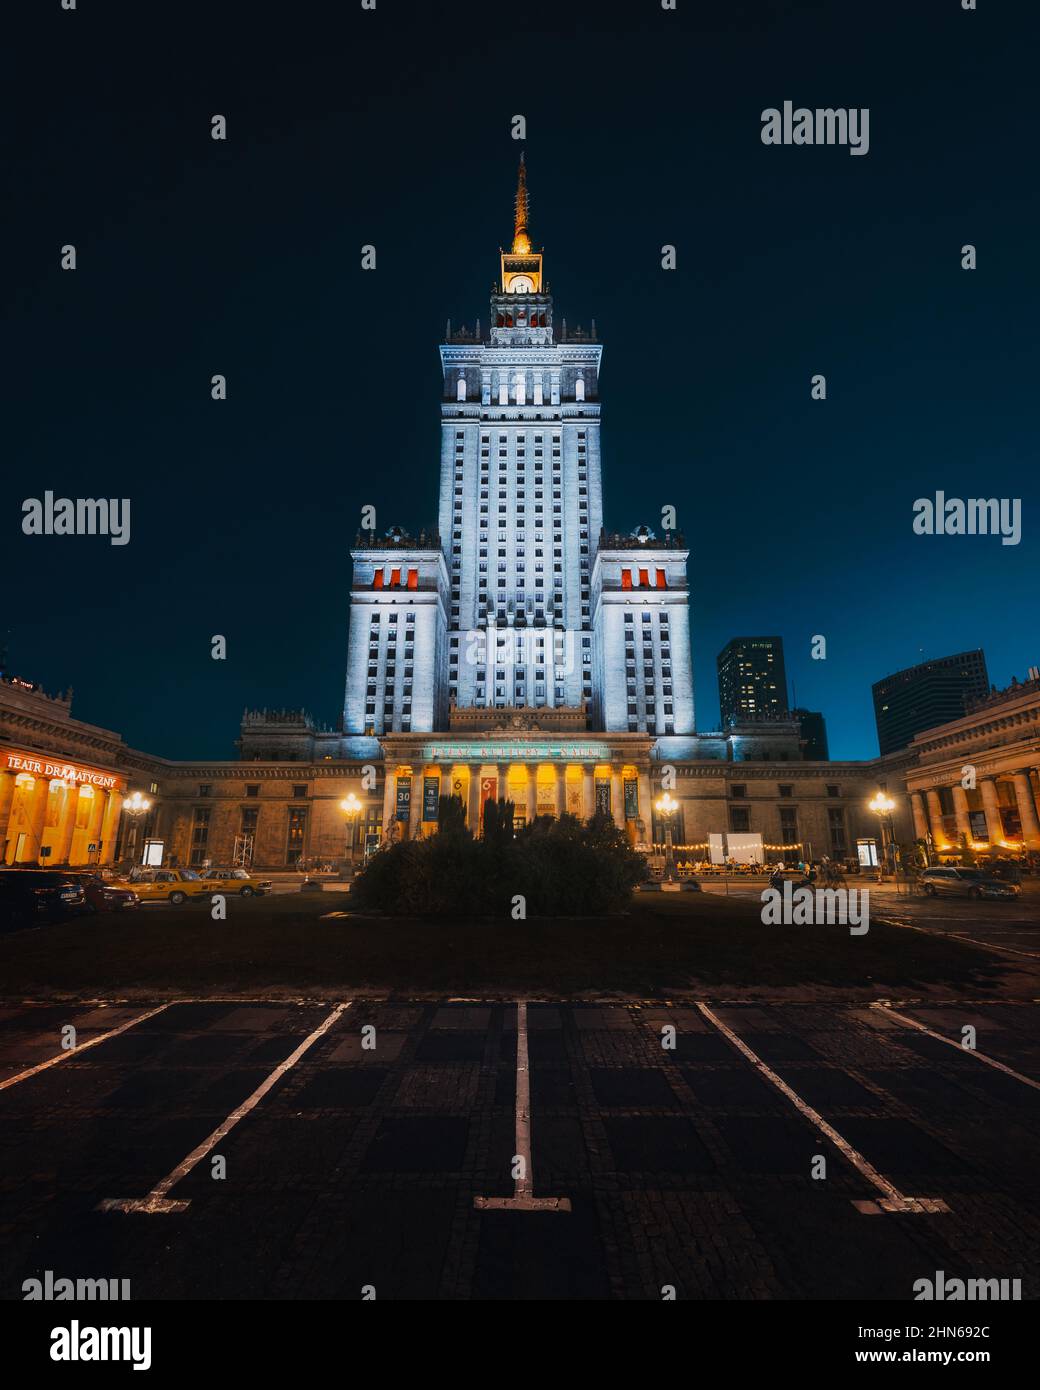 Palast der Kultur und Wissenschaft bei Nacht - Warschau, Polen Stockfoto